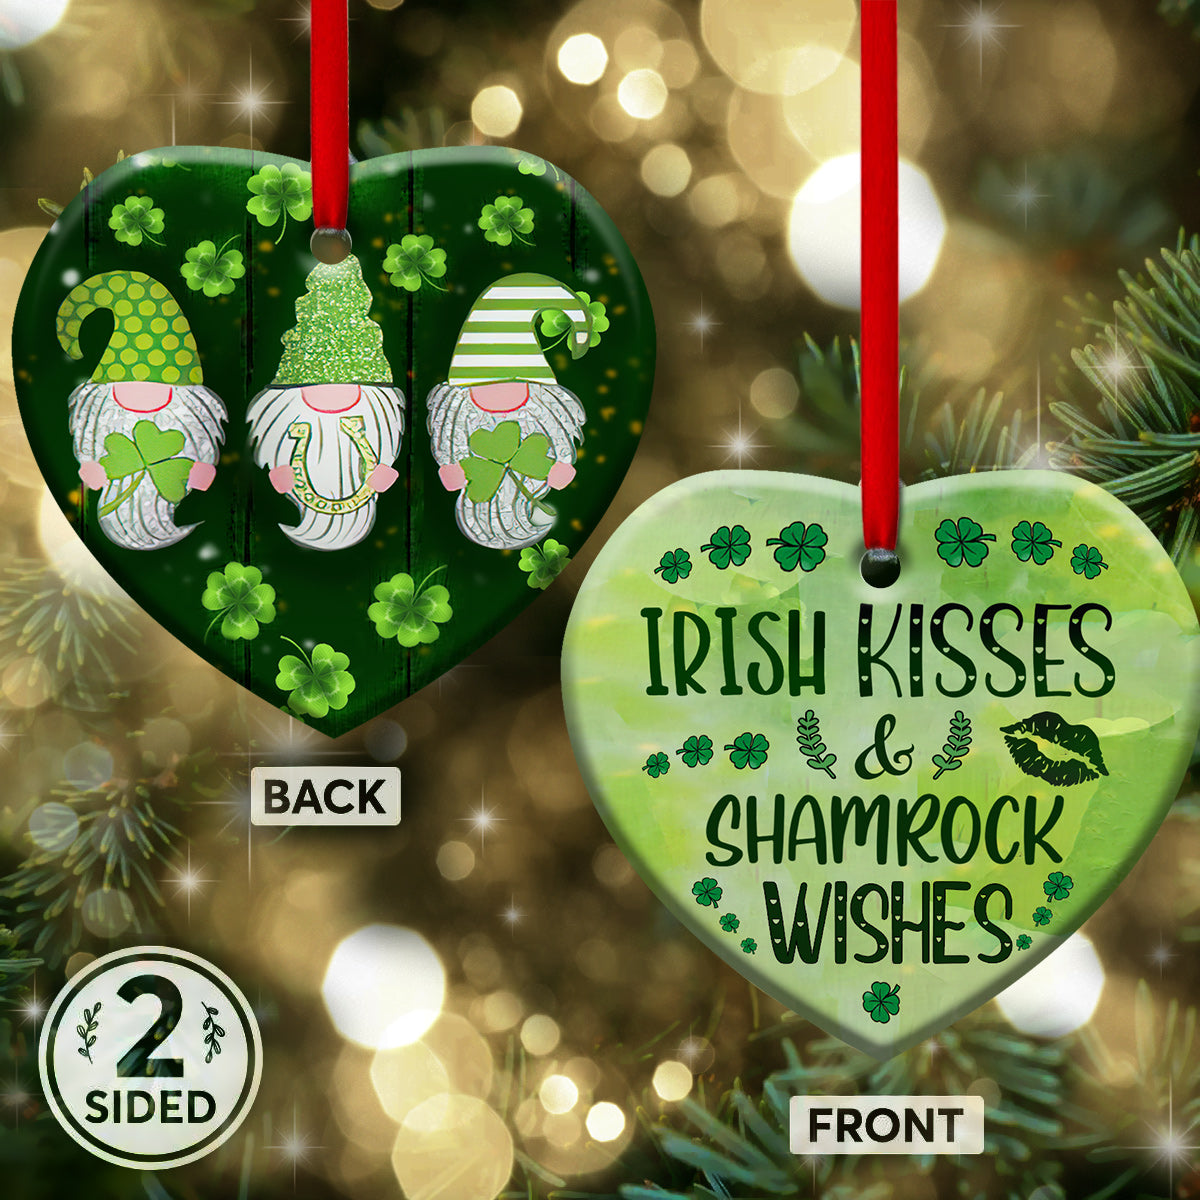 St. Patrick's Day Gnome Irish Kisses And Shamrock Wishes - Heart Ornament - Owls Matrix LTD